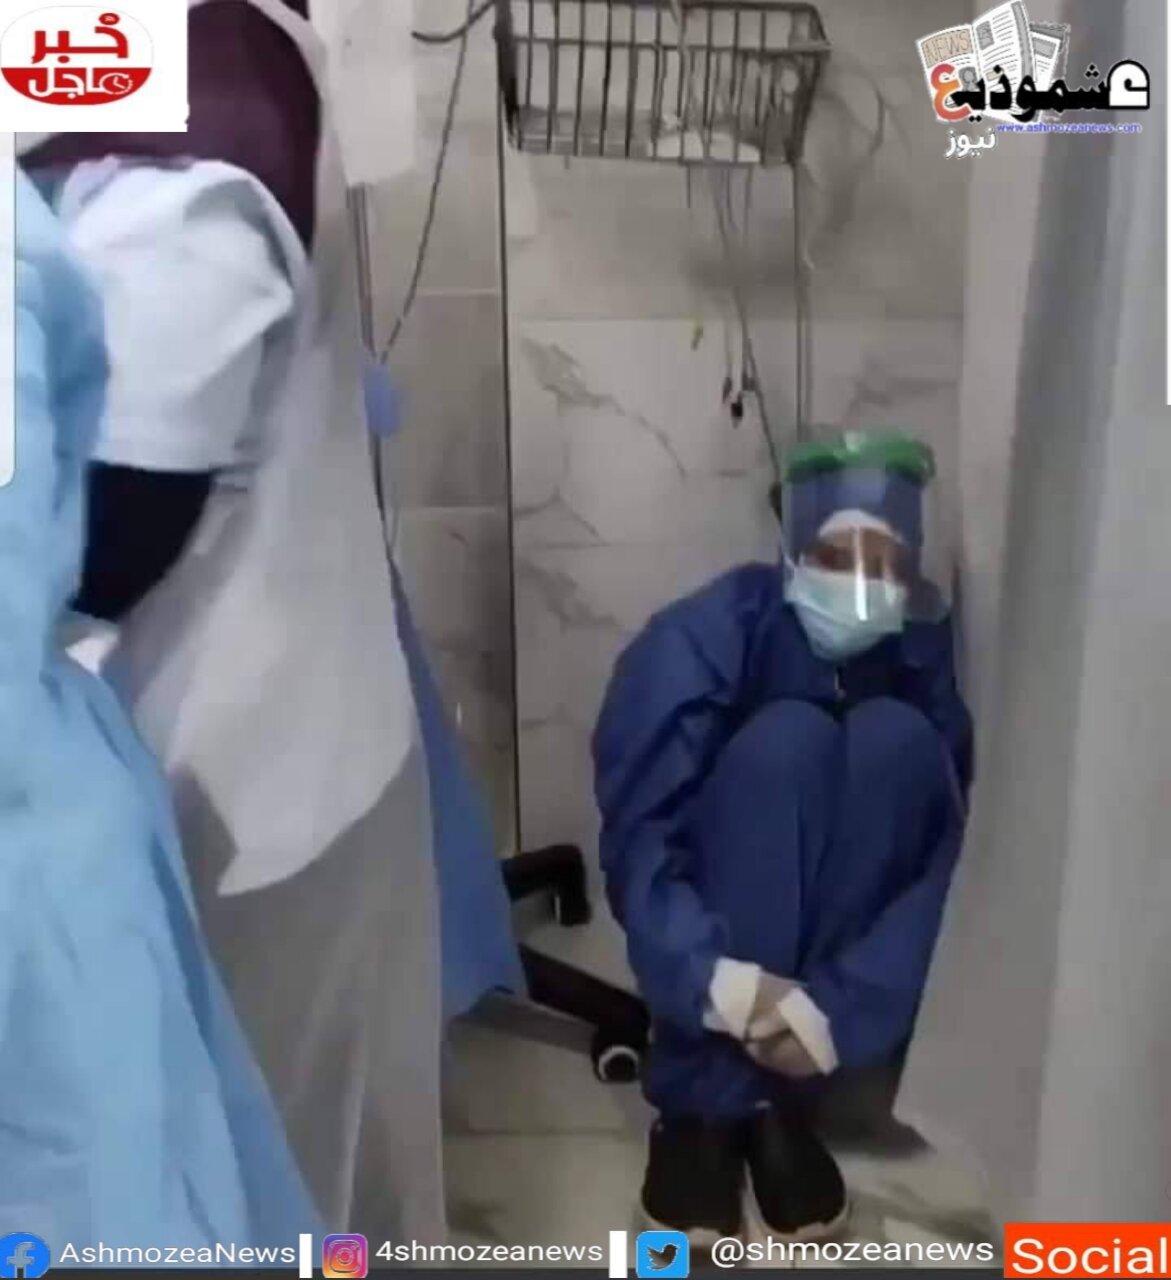 أول تعليق من الممرضة التي هزت صورتها مواقع التواصل الاجتماعي حول حادثة مستشفى الحسينية